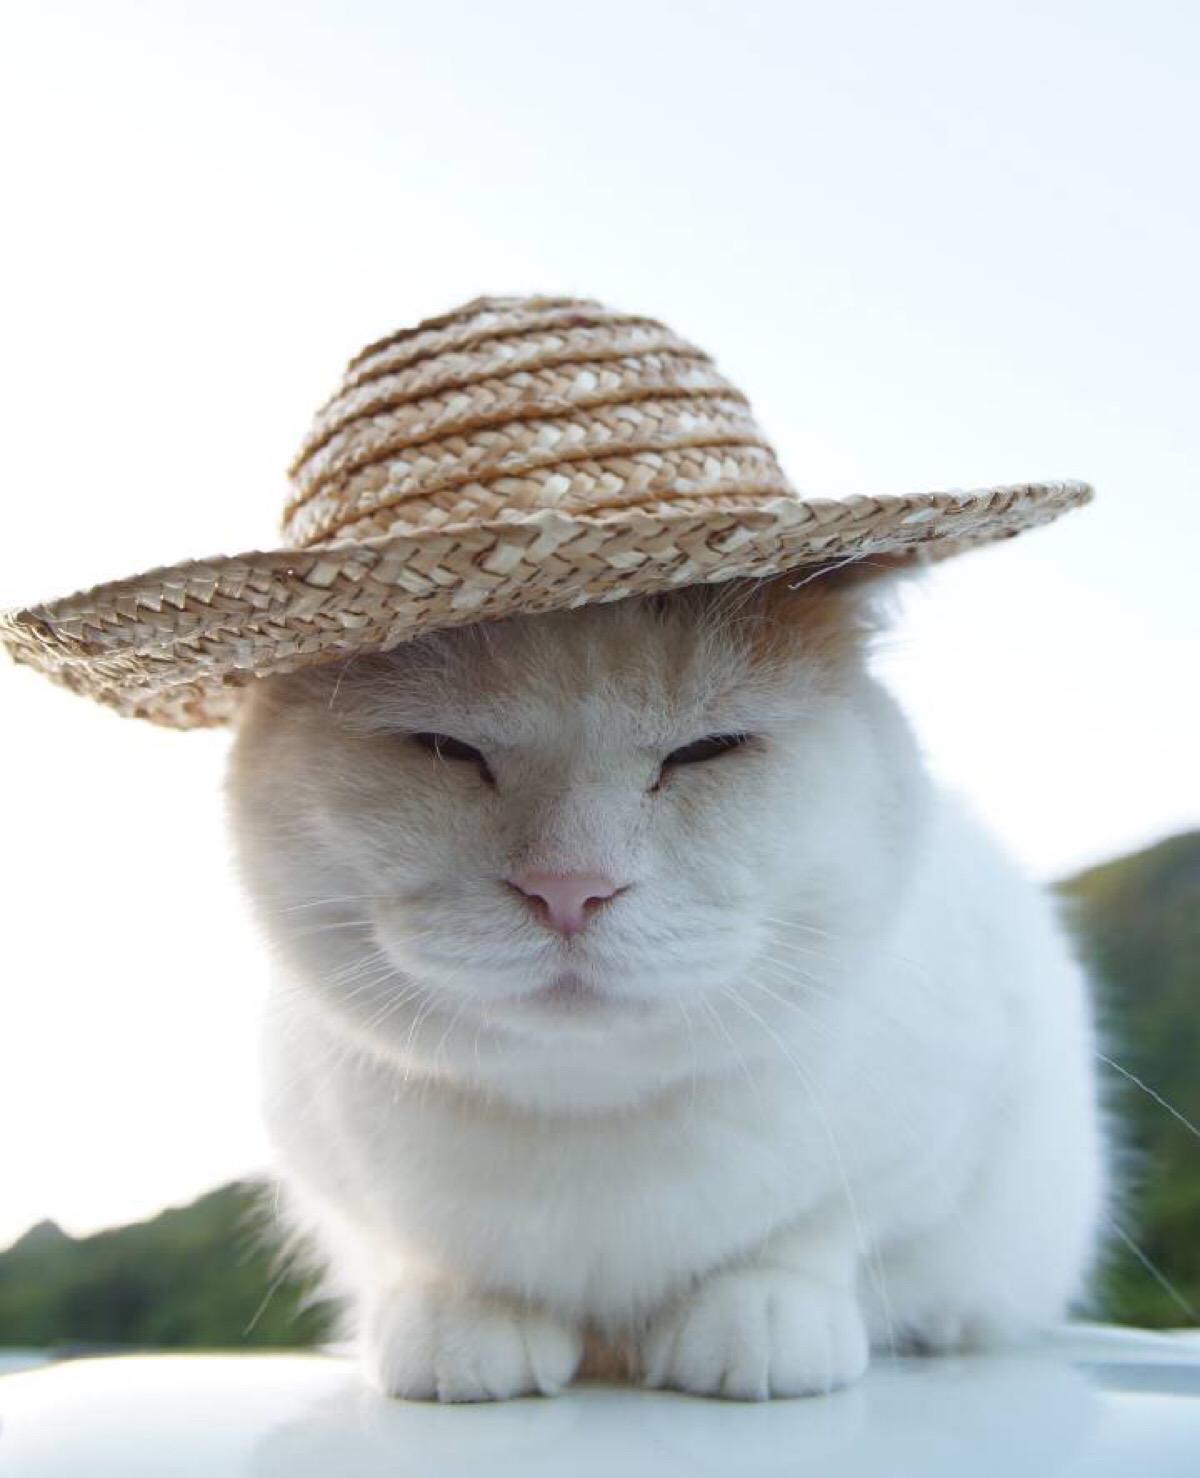 猫叔带上草帽就变成猫农了!